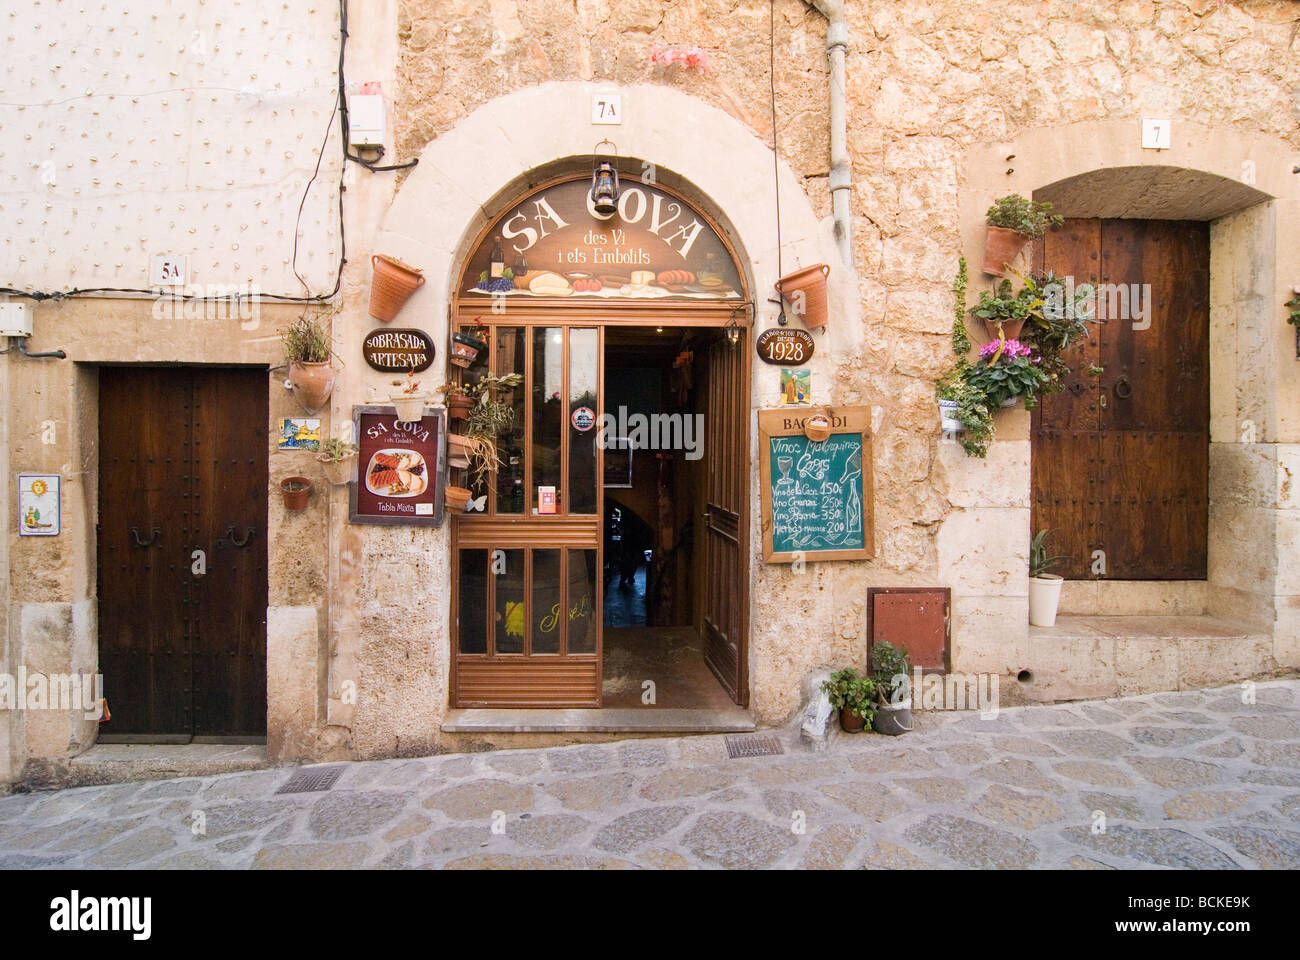 The village Valldemossa on the Balearic Island Mallorca, Spain. Stock Photo